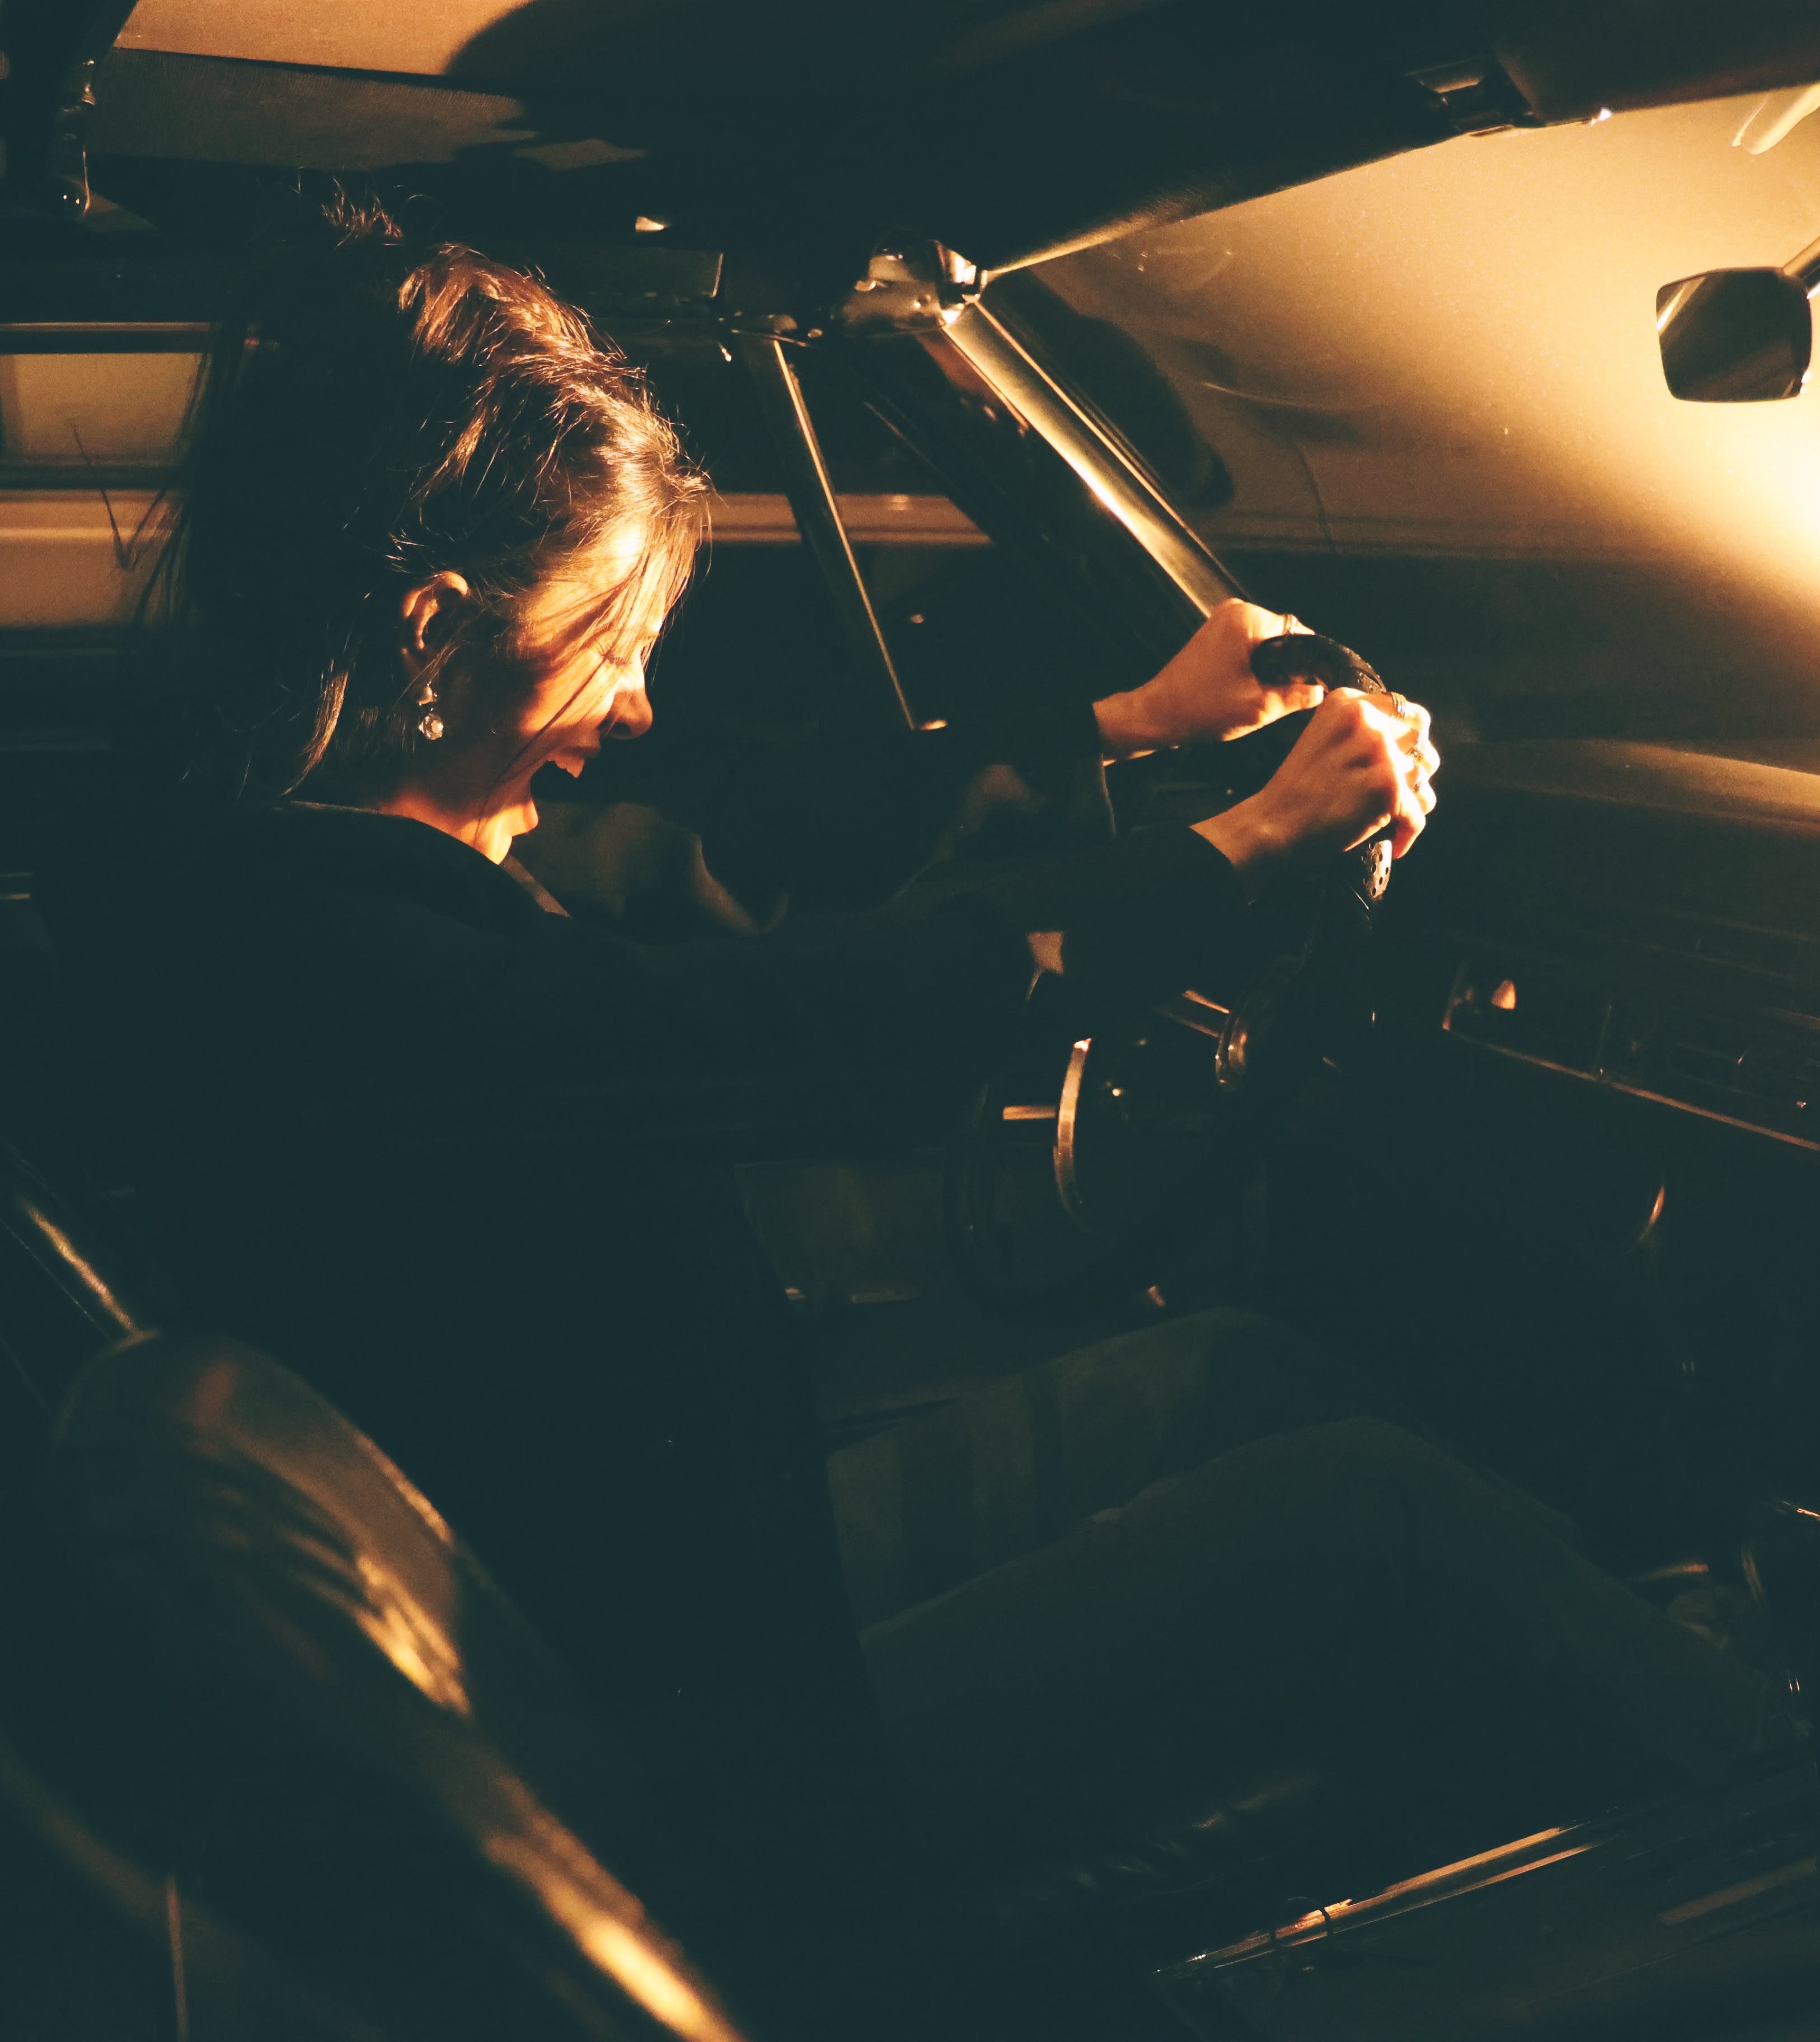 Une femme assise et criant à l'intérieur d'une voiture | Source : Pexels